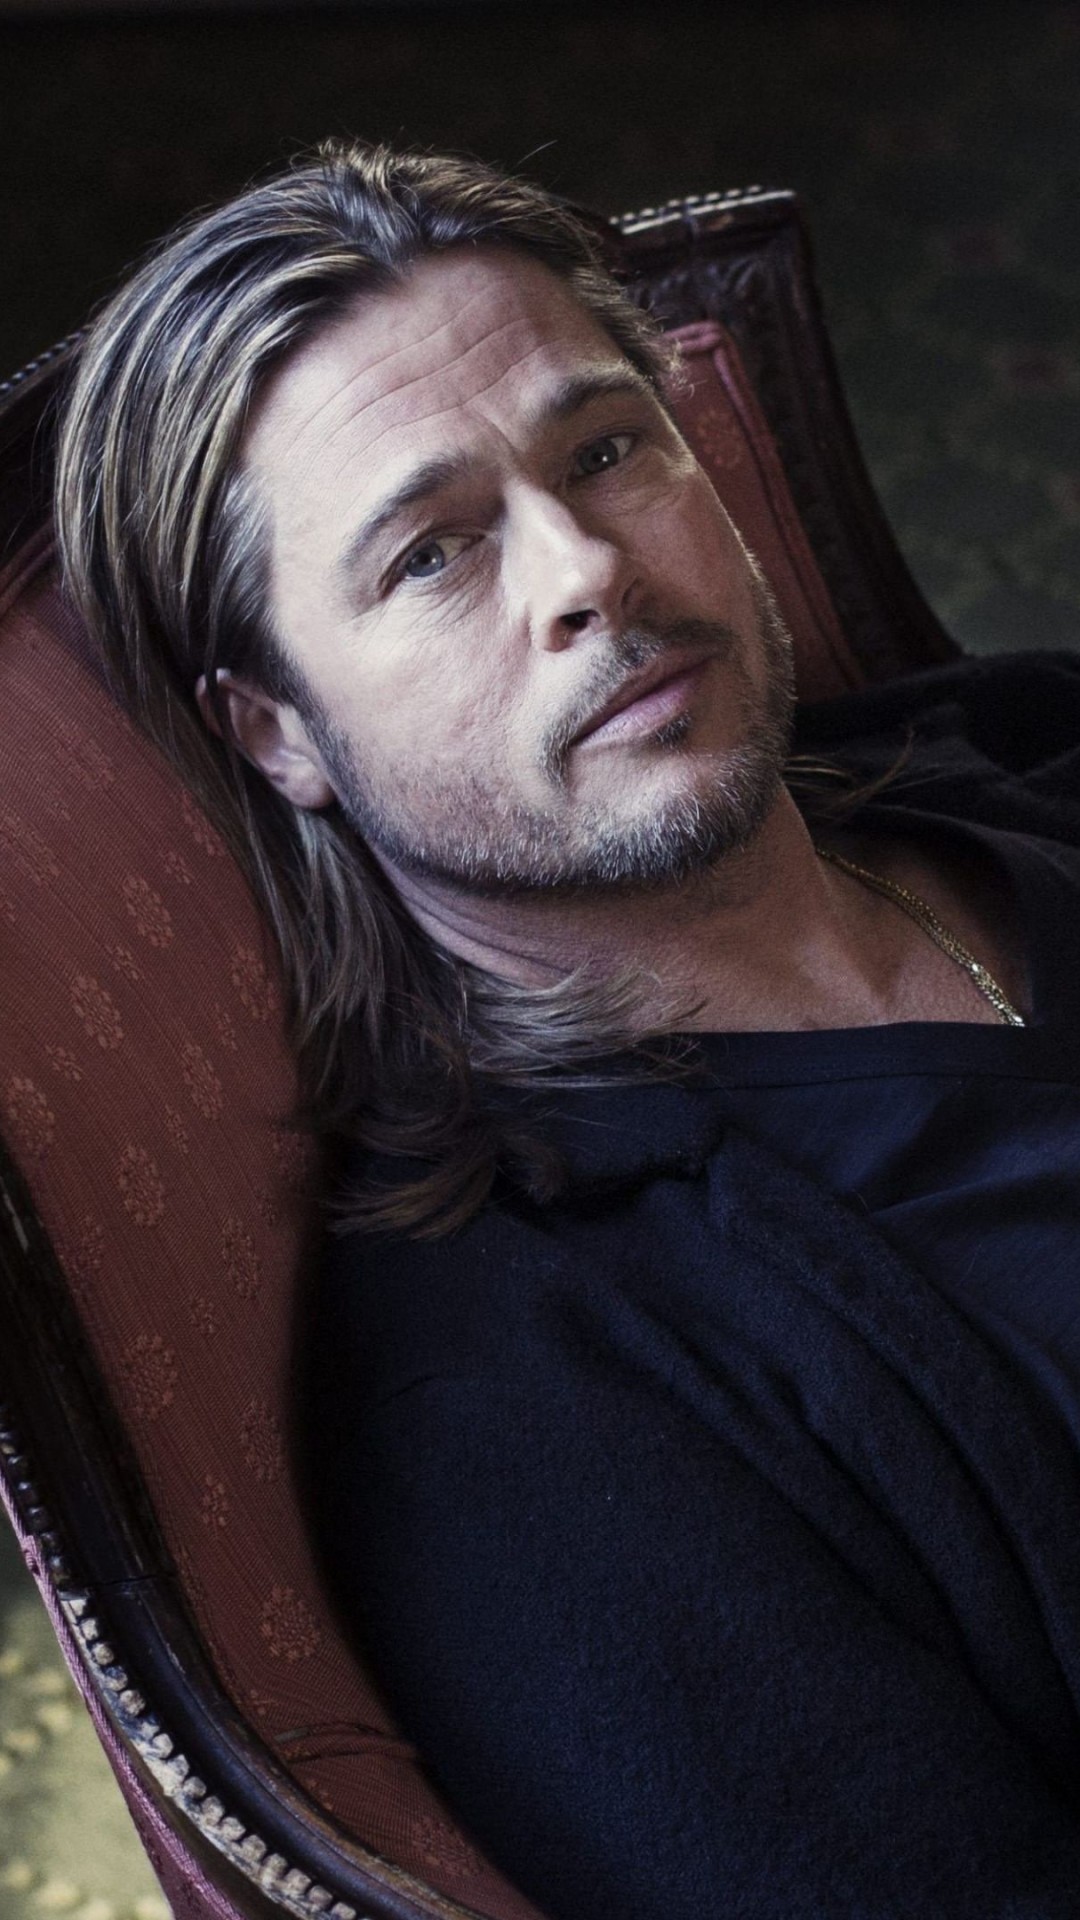 Brad Pitt Sitting On Chair Wallpaper for LG G2